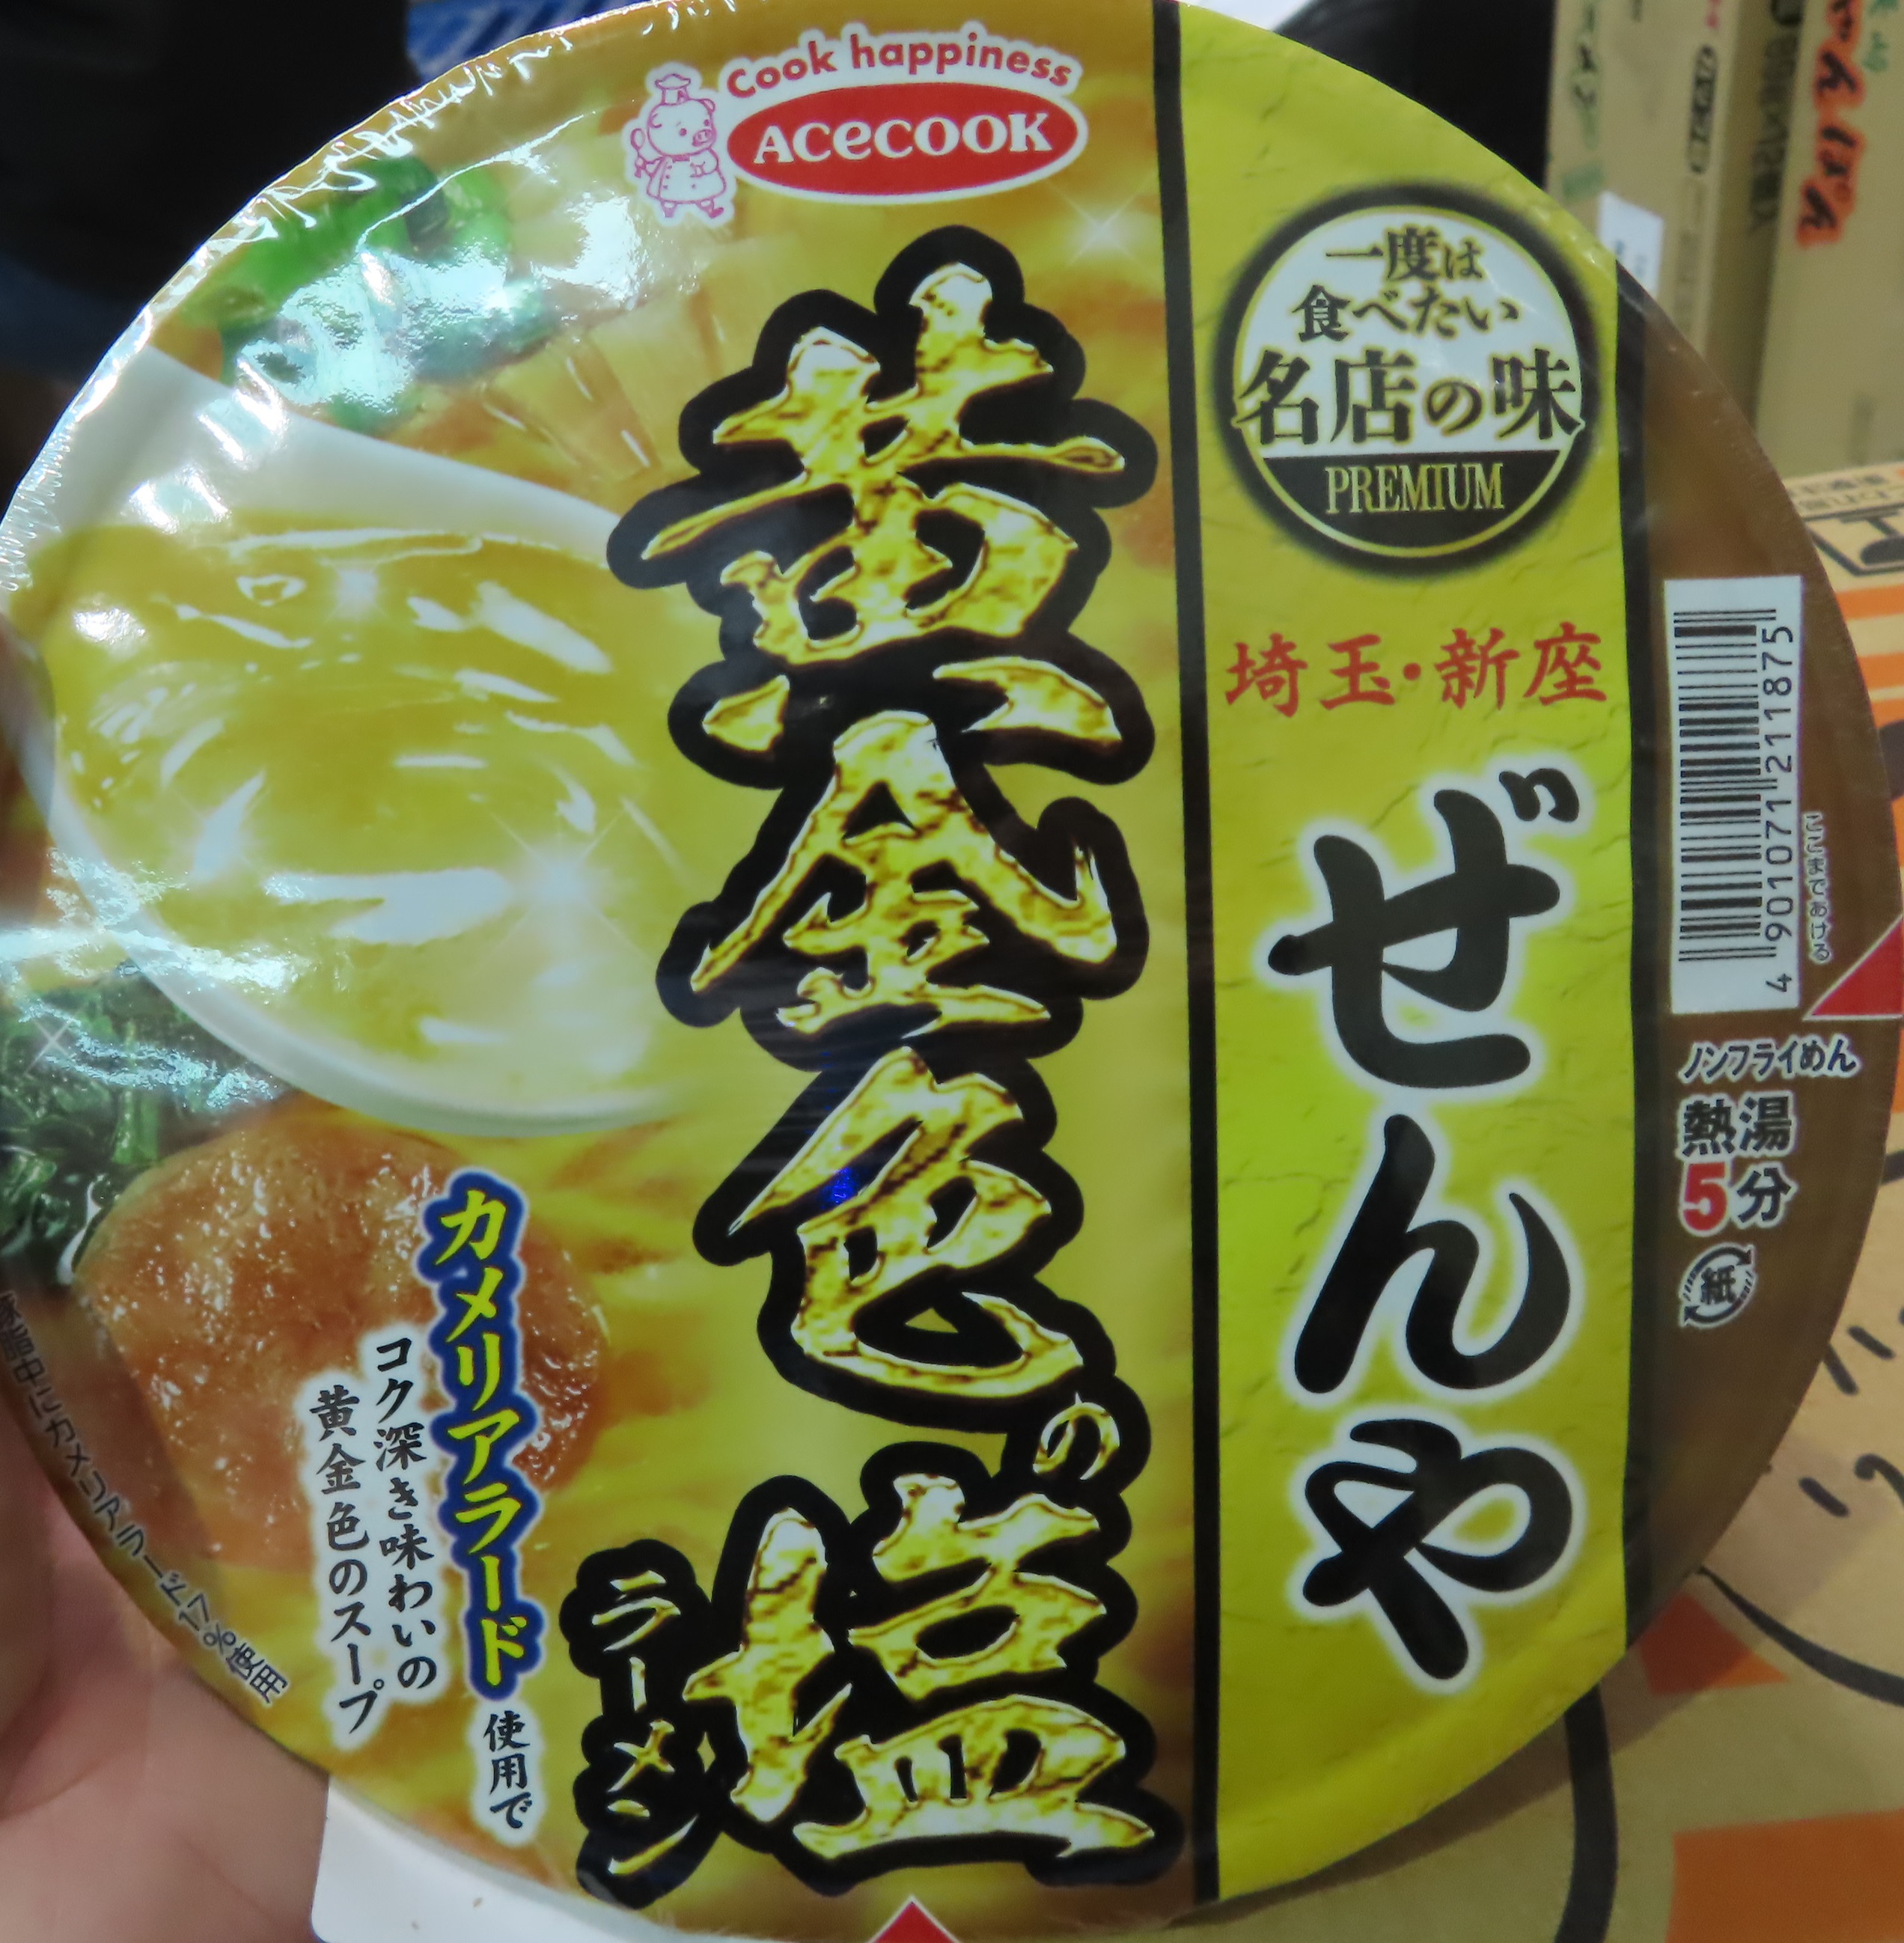 日本出口「小豬碗麵-鹽味」農藥殘留含量不符規定